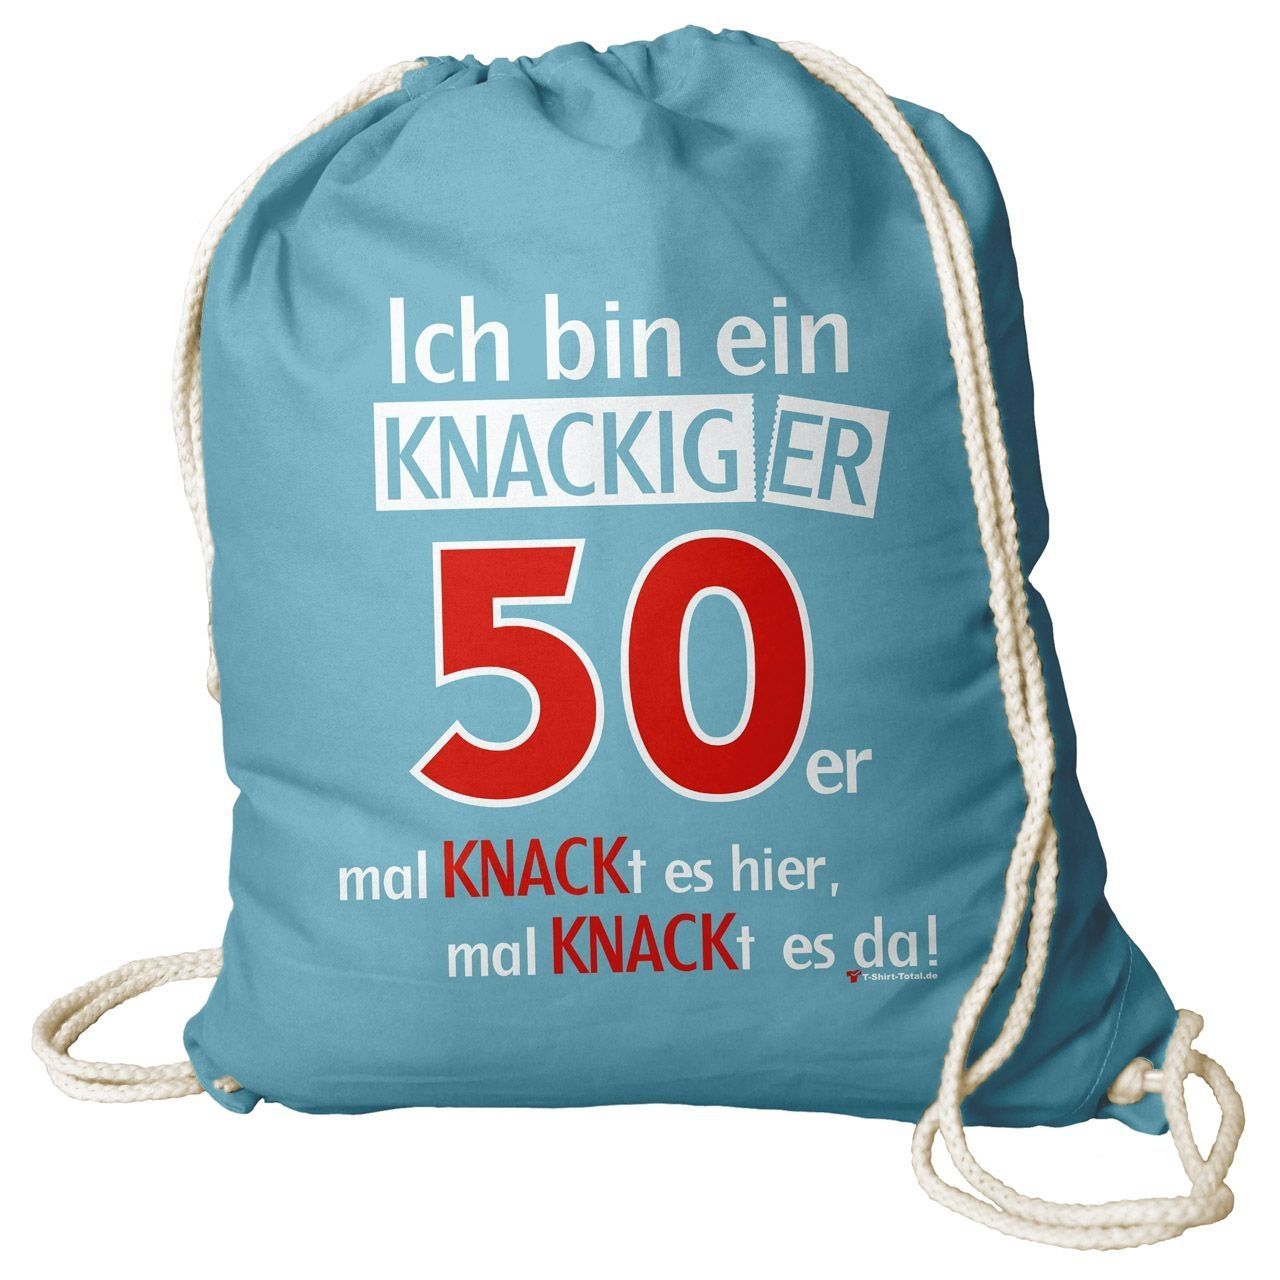 Knackiger 50er Rucksack Beutel türkis